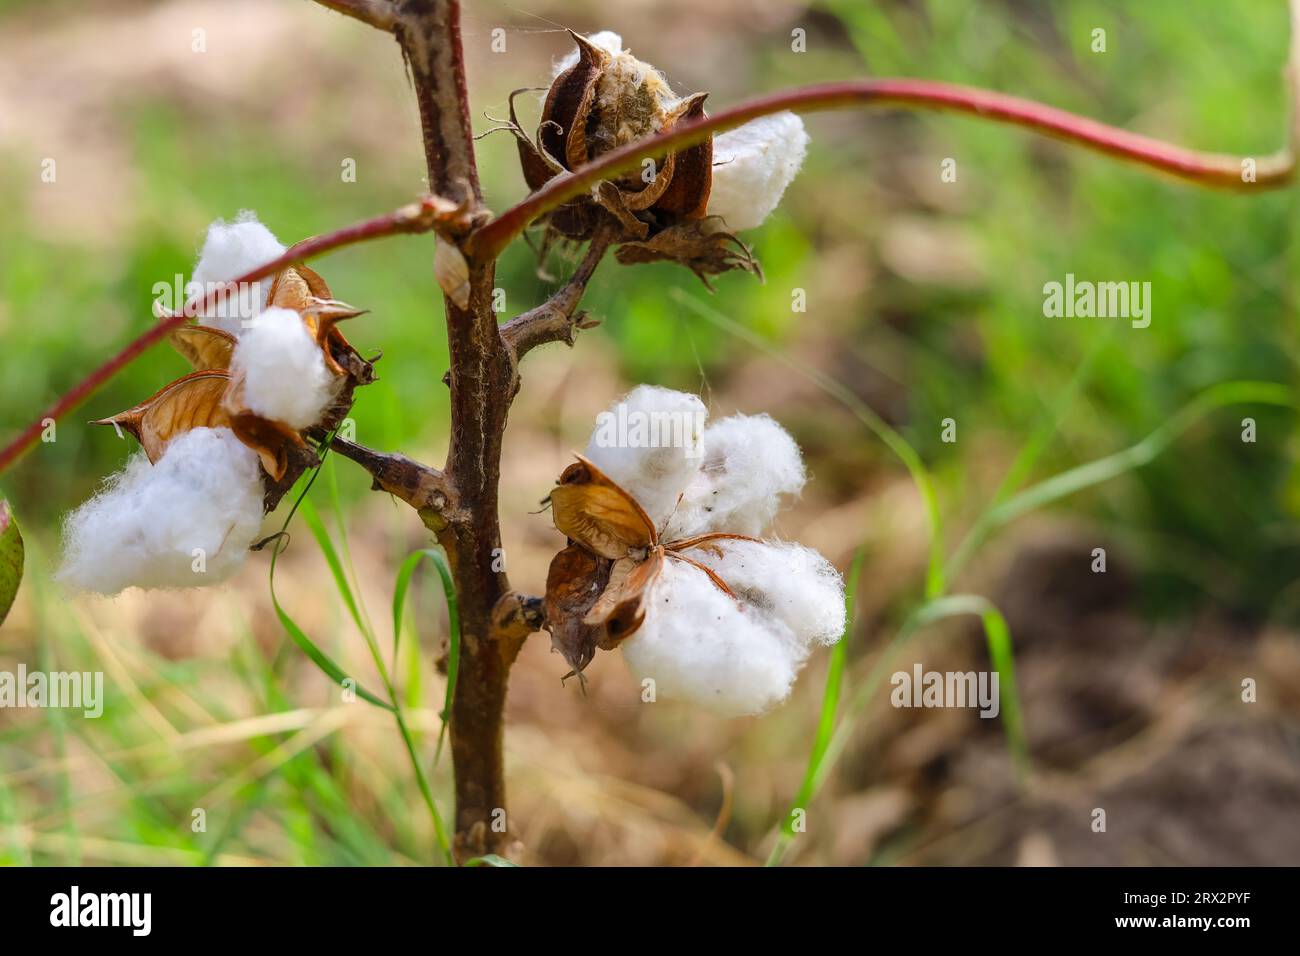 Nahaufnahme einer weißen Baumwollblume. Rohe Bio-Baumwolle, die auf der Baumwollfarm angebaut wird. Gossypium Herbaceum Nahaufnahme mit frischen Samenschalen. Baumwollpuppe hängt auf pla Stockfoto